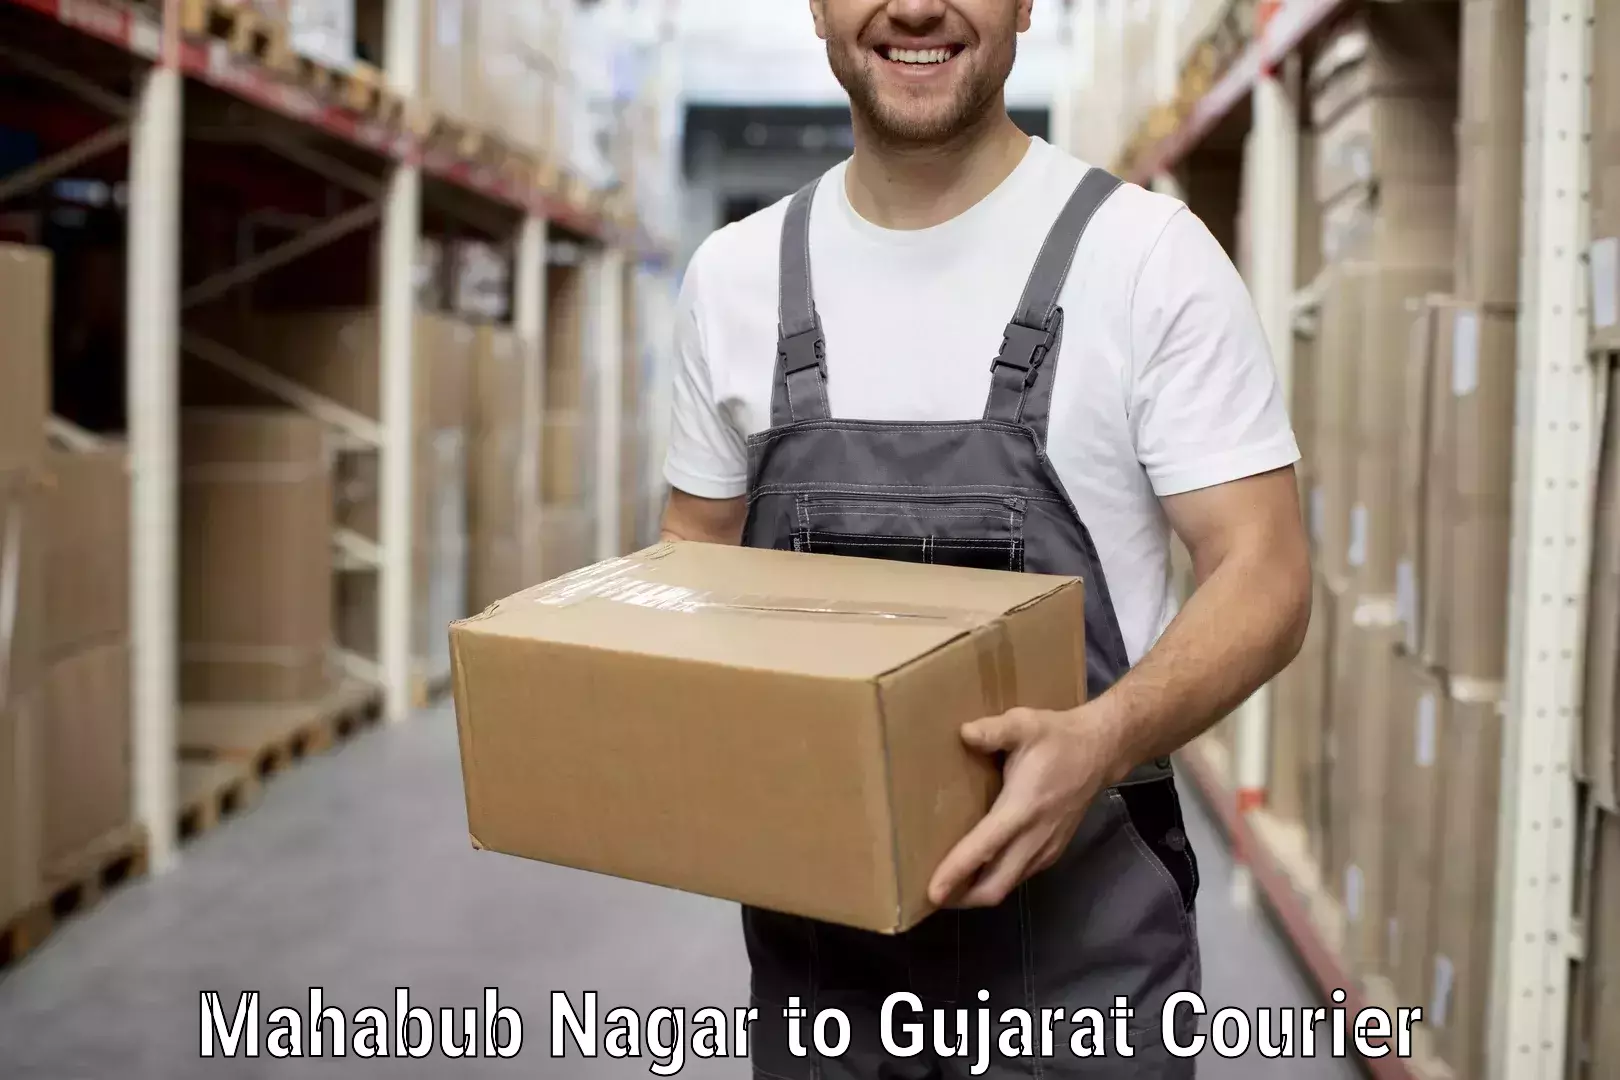 Moving and packing experts Mahabub Nagar to Tarapur